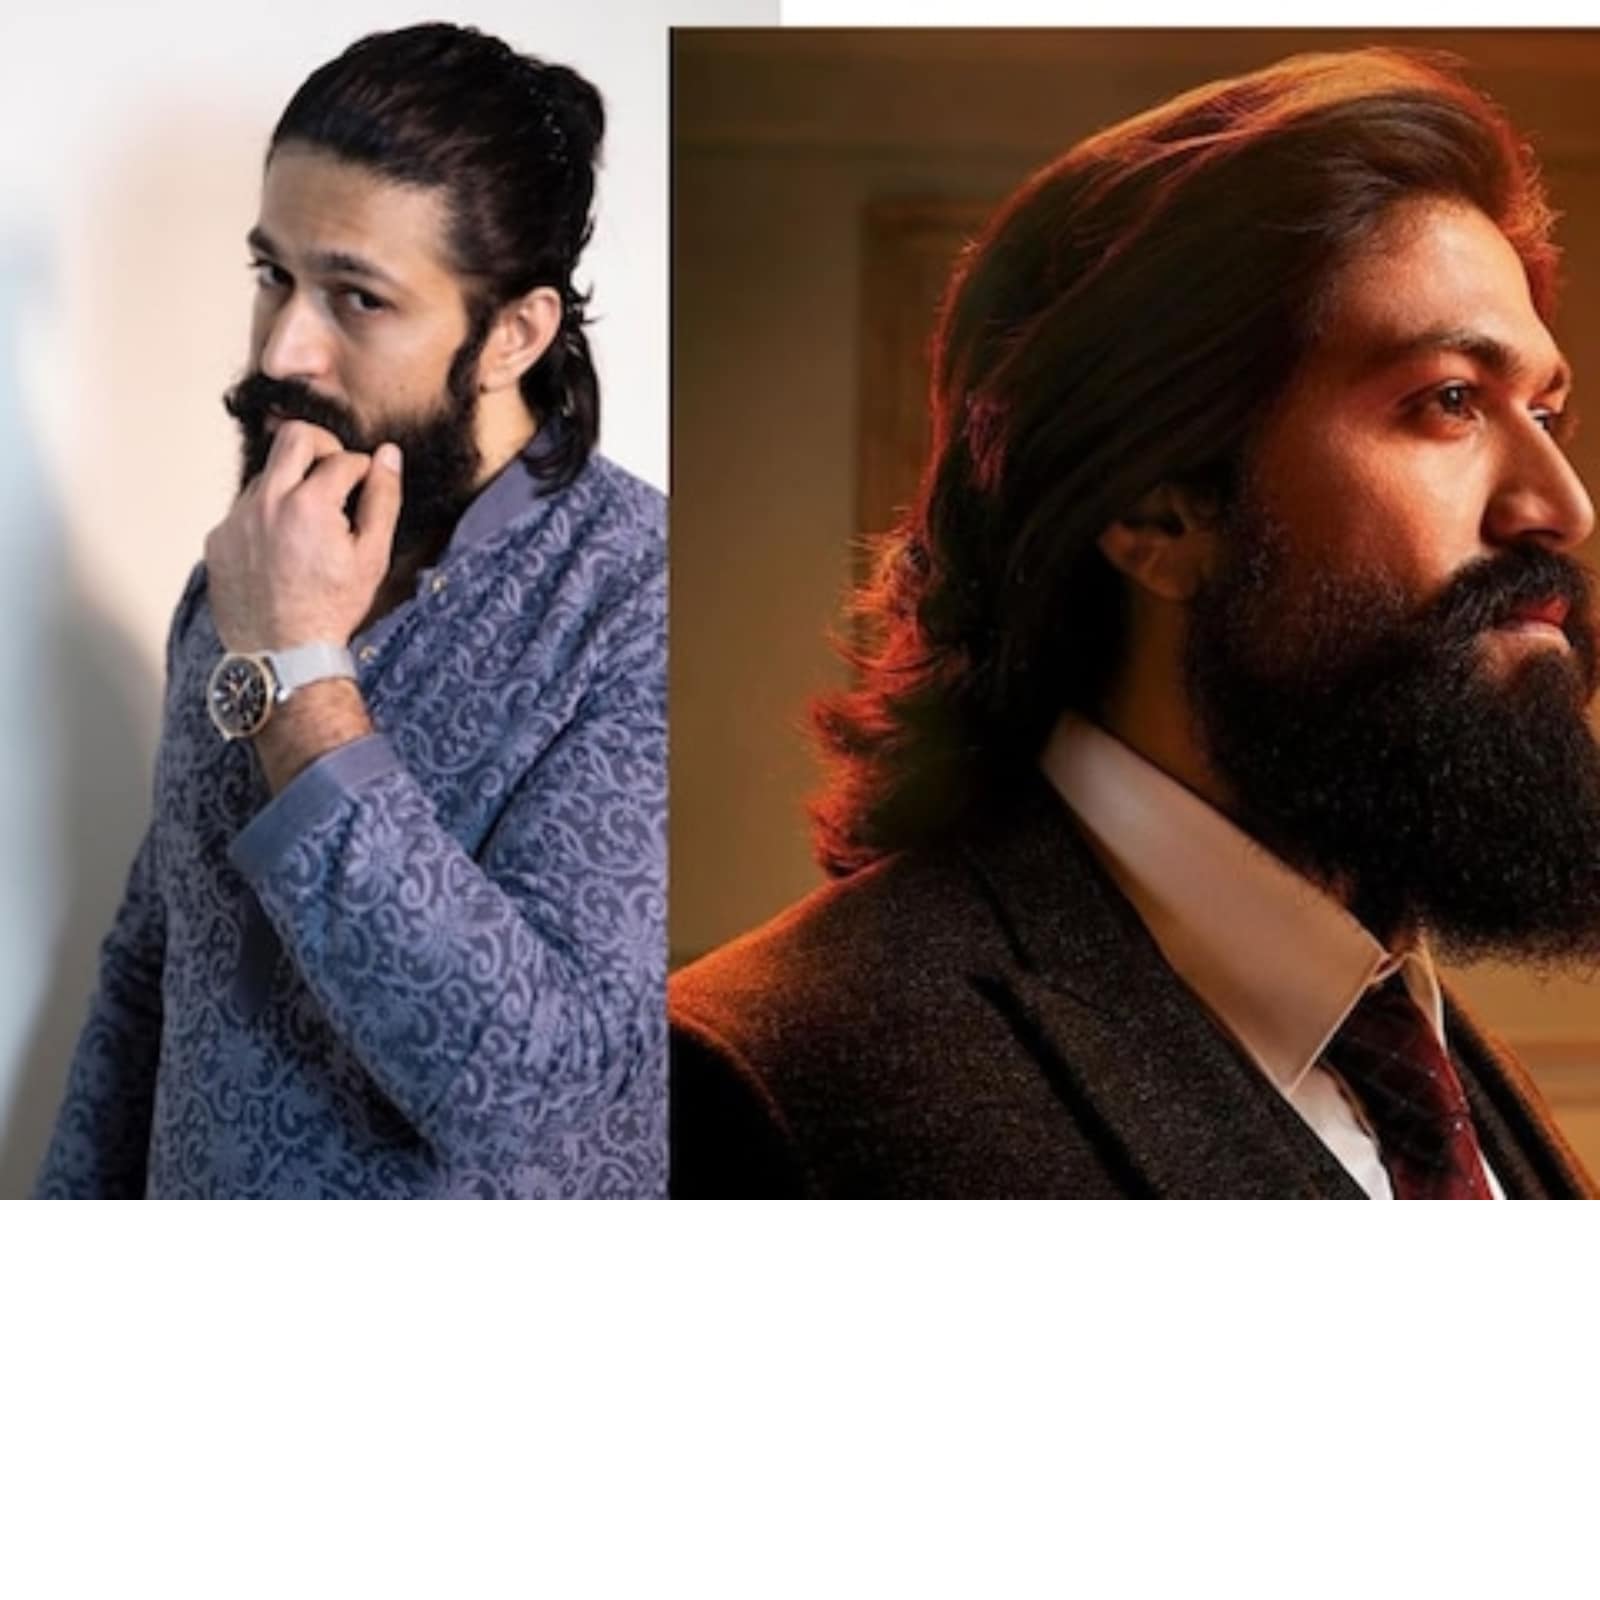 ಕರ್ನಾಟಕ_filmywood ® on Instagram: “#yash #kgf #actor #rockingstar #selfie  #rockybhai #yashradhika #cool #sa… | Beard styles, Hair and beard styles,  Gents hair style